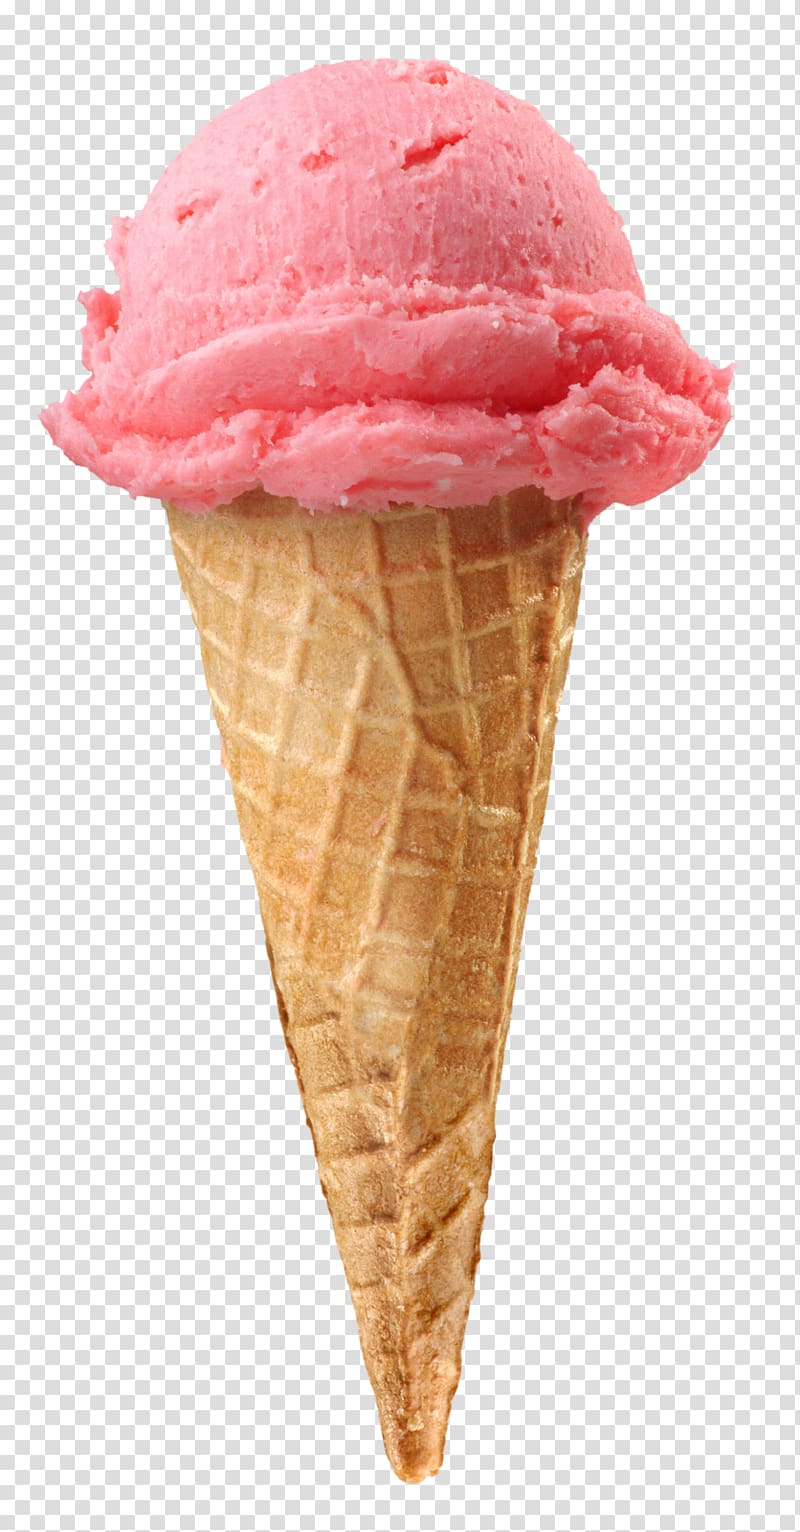 Ice Cream Cones Strawberry ice cream Sundae, ice cream transparent background PNG clipart